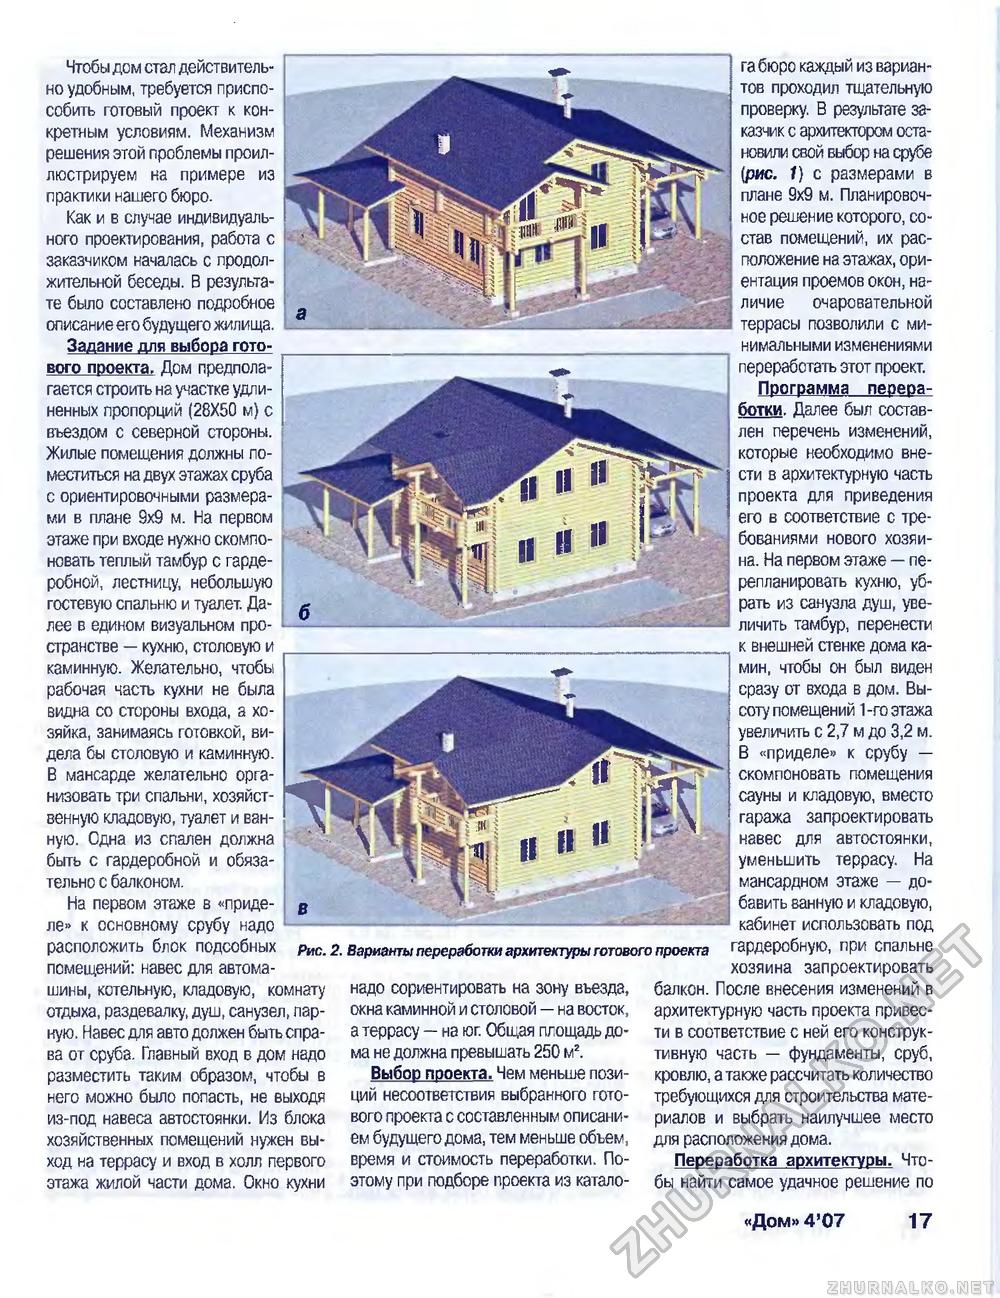 Дом 2007-04, страница 17